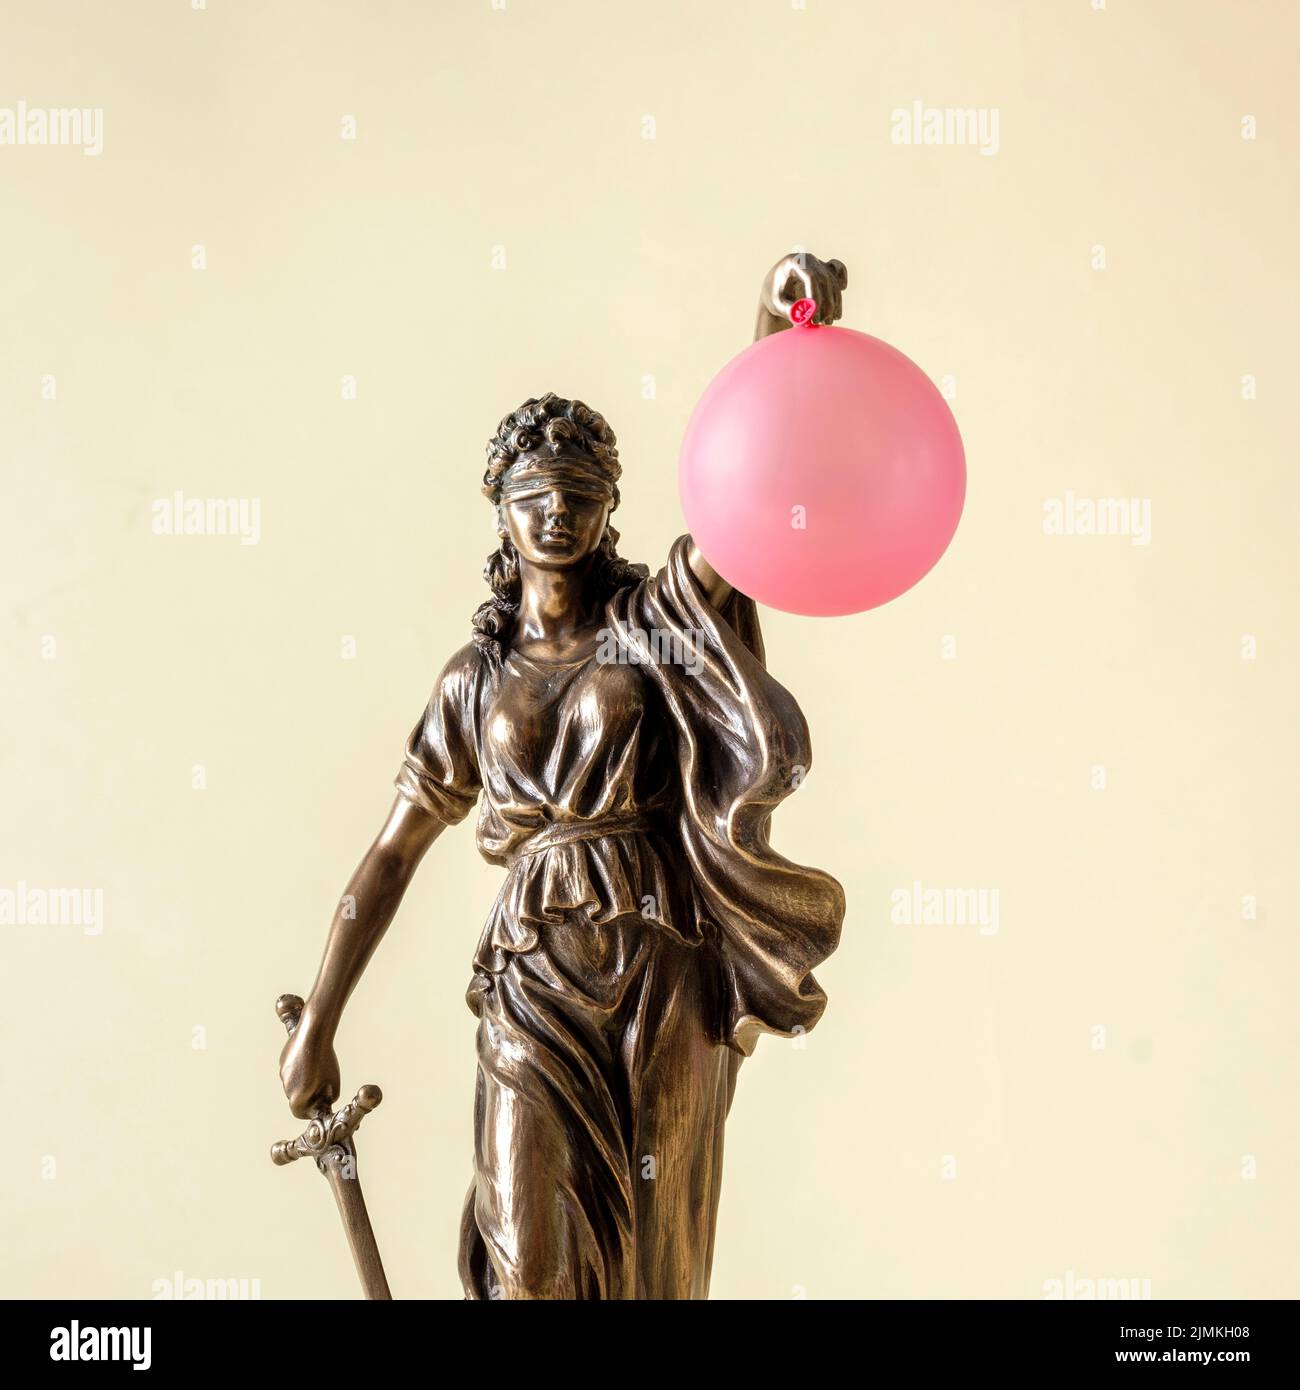 Statue de justice et de droit Themis sur fond jaune pastel avec ballon rose. Une petite blague surprise et un cadeau inattendu. Banque D'Images